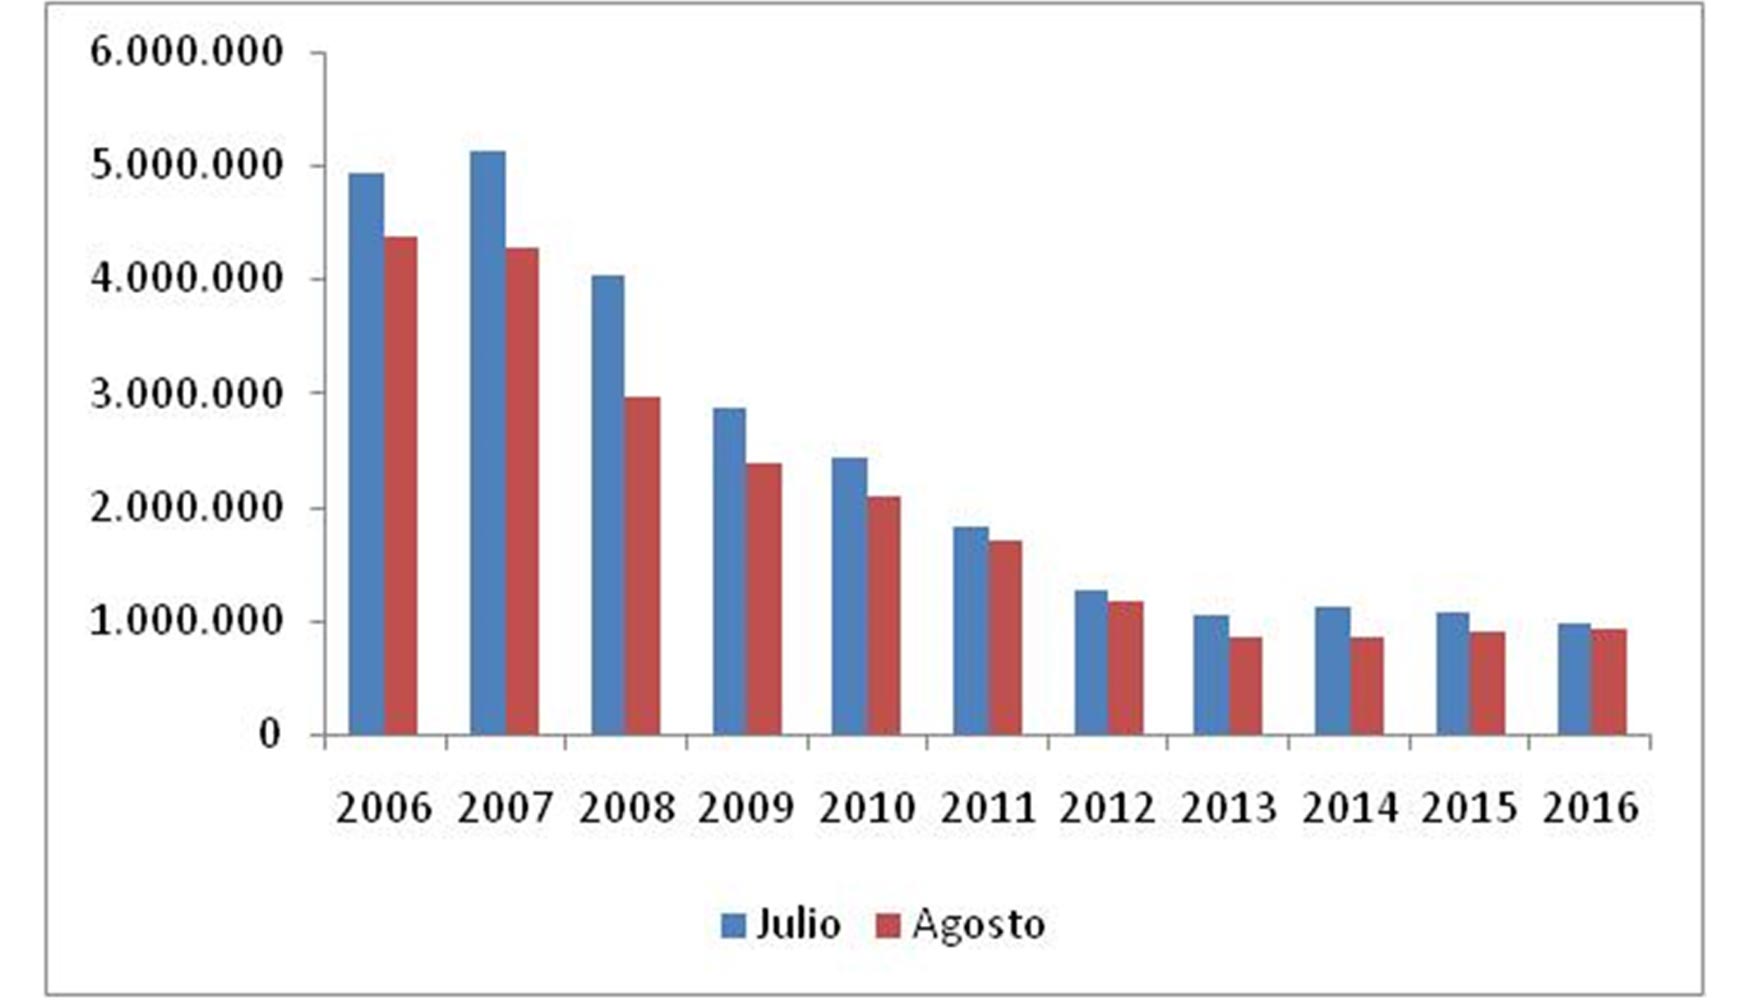 Evolucin del consumo de cemento en Espaa durante los meses de julio y agosto (aos 2006-2016, toneladas)